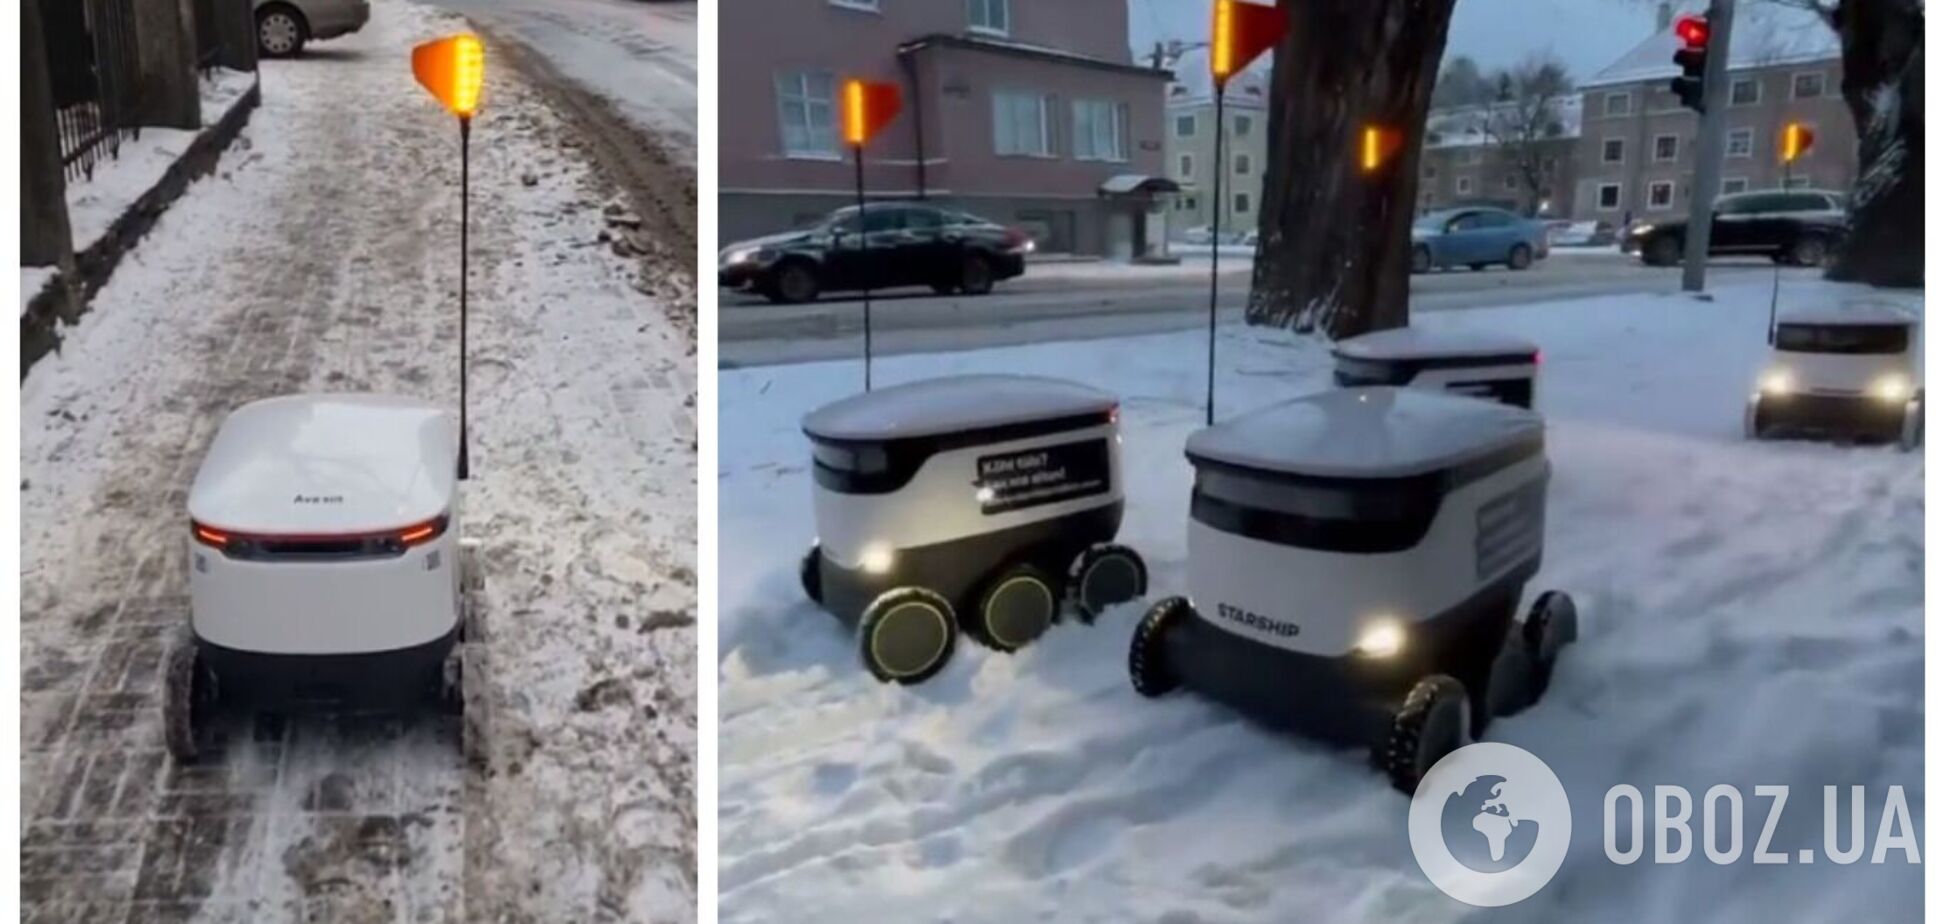 В Таллине роботы-курьеры застряли в снежных заносах: дворники не расчистили тротуар. Видео